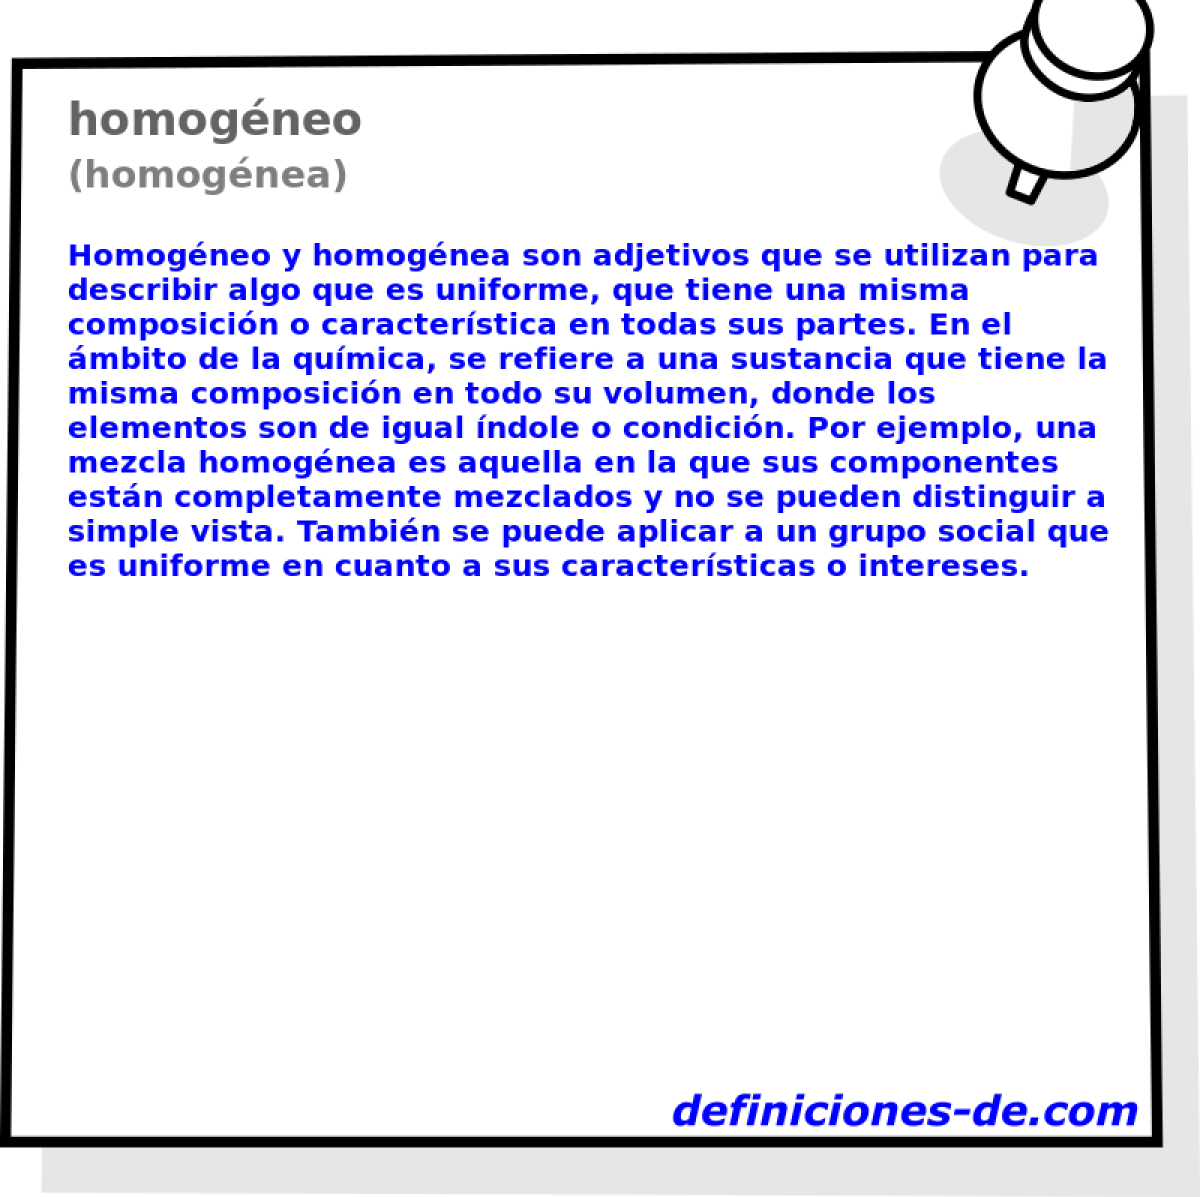 homogneo (homognea)